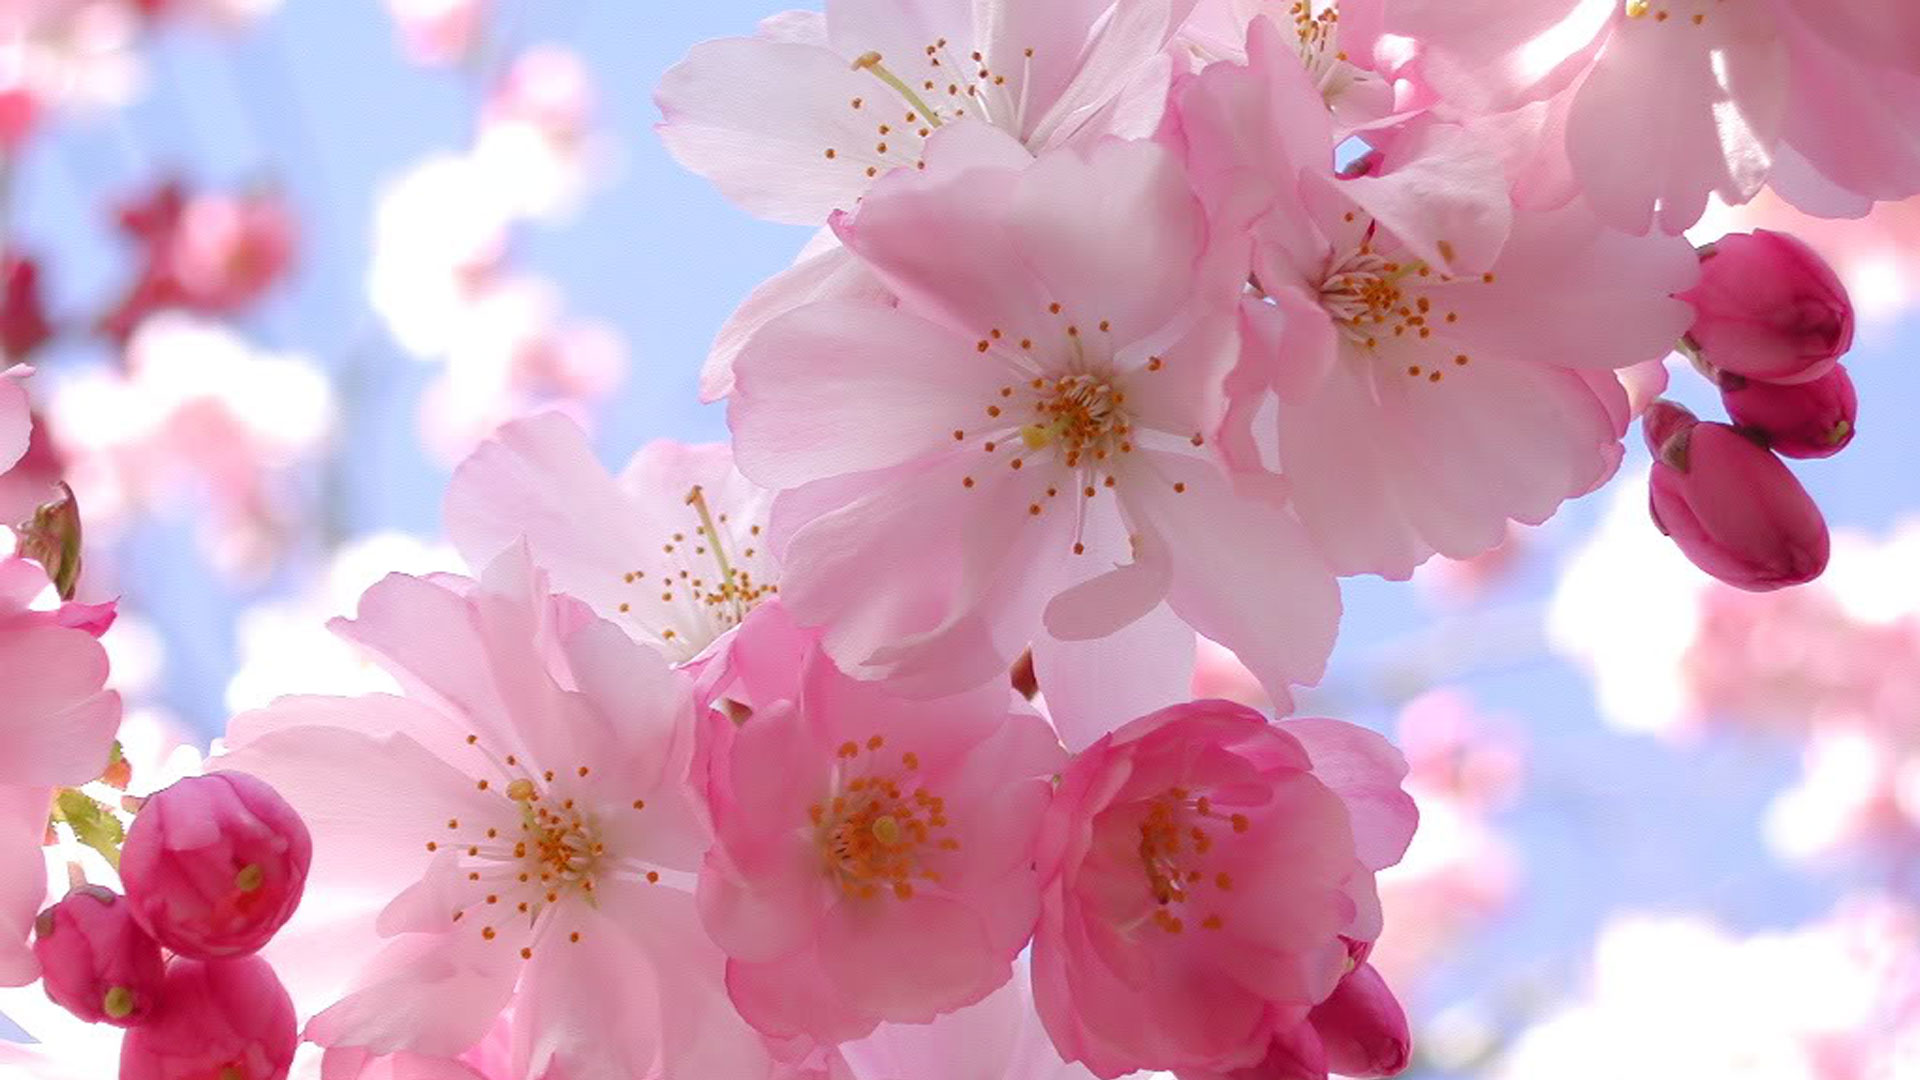 Cherry Blossom Wallpaper For iPhone Wallpaperlepi